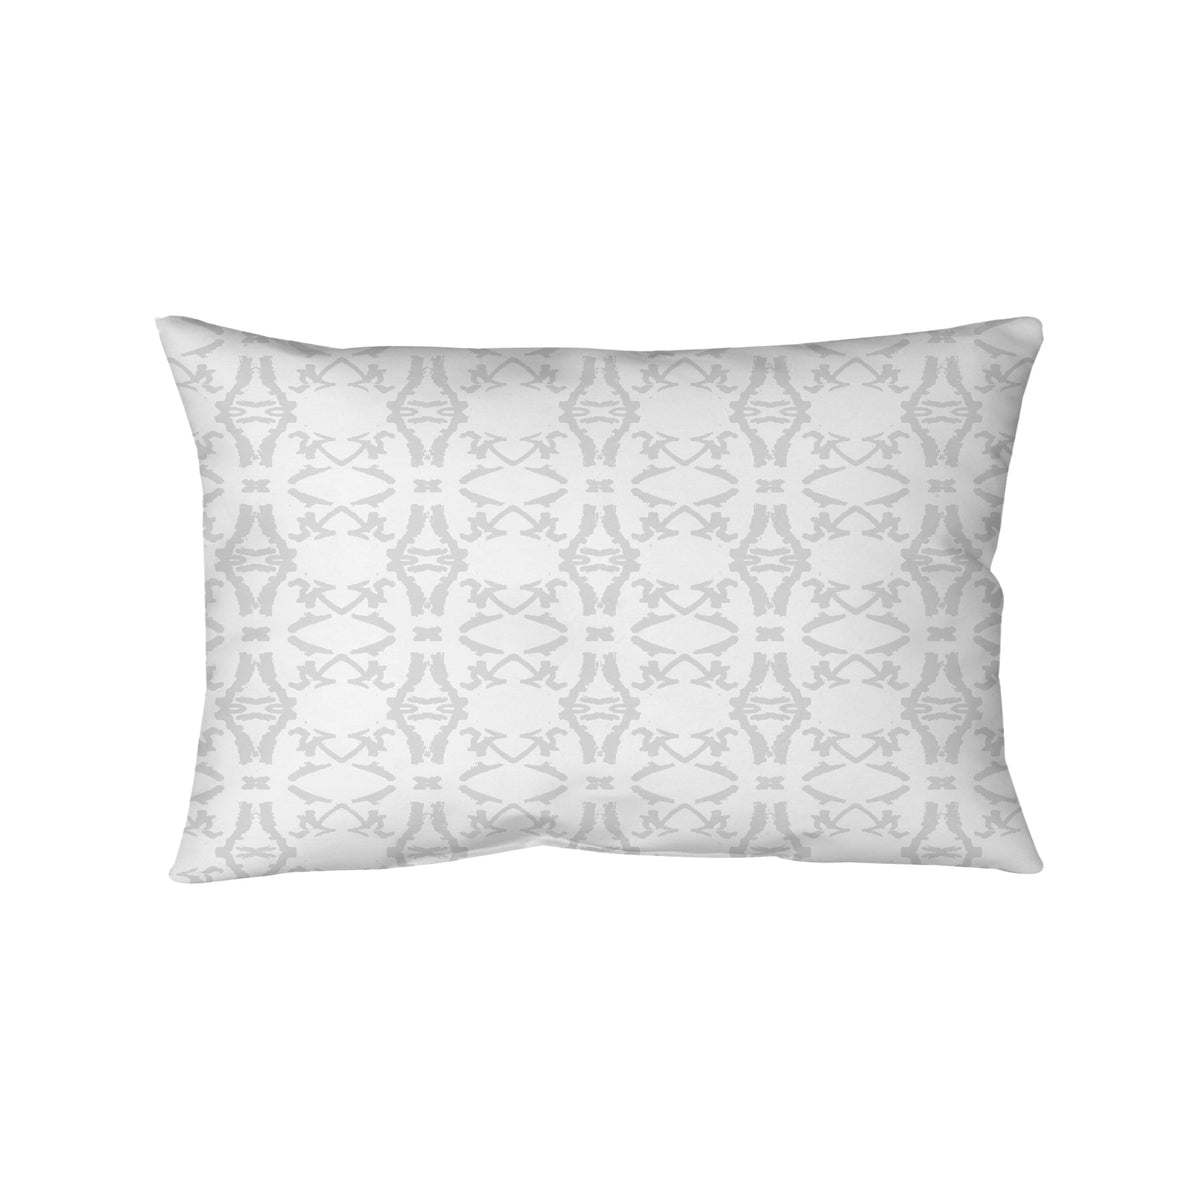 Bolster Pillow - Monarch Grey Lattice Bedding, Pillows, Bolster Pillow MWW 